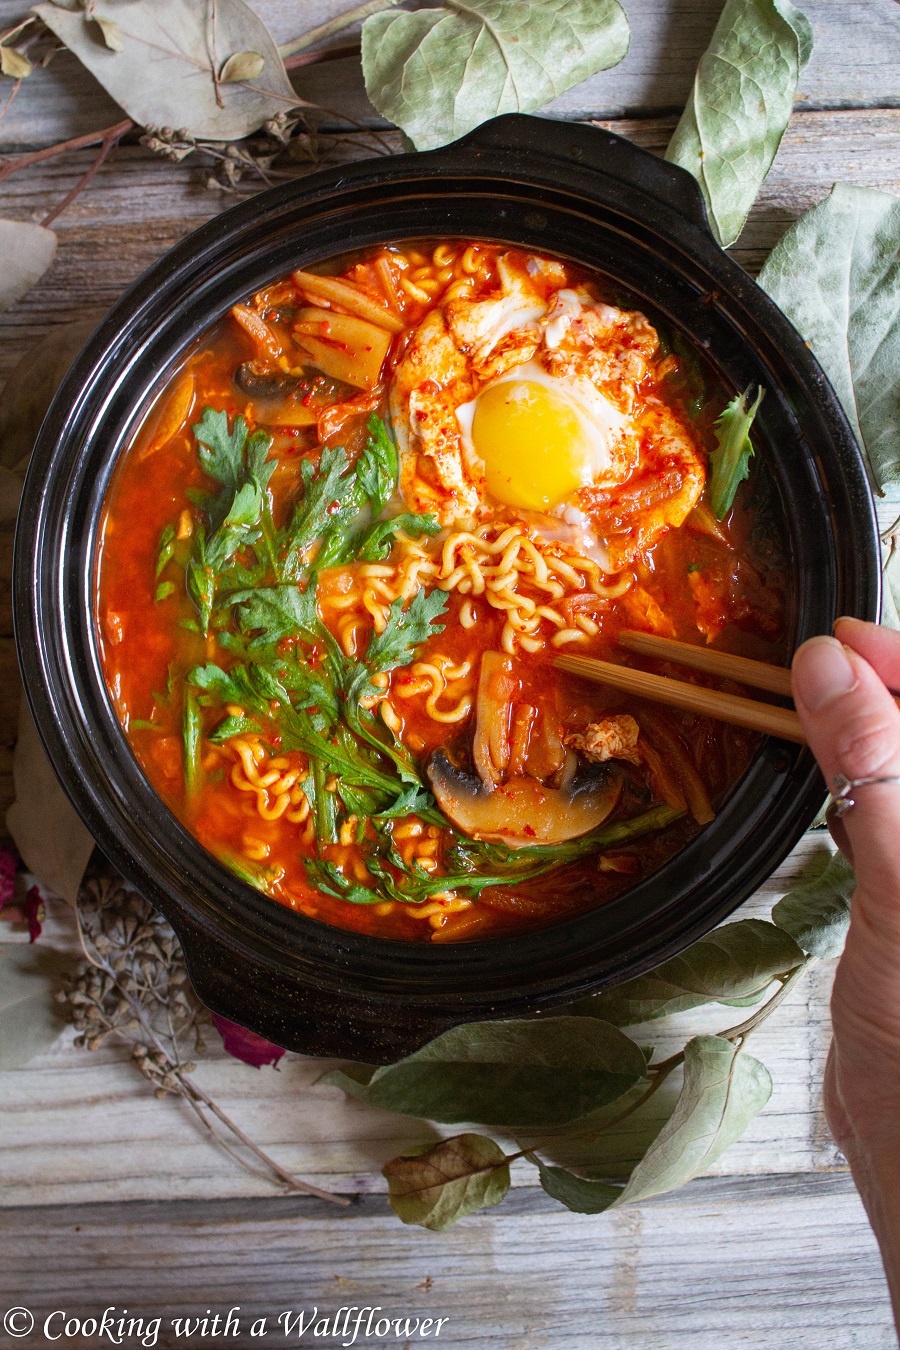 Kimchi Ramen Stew